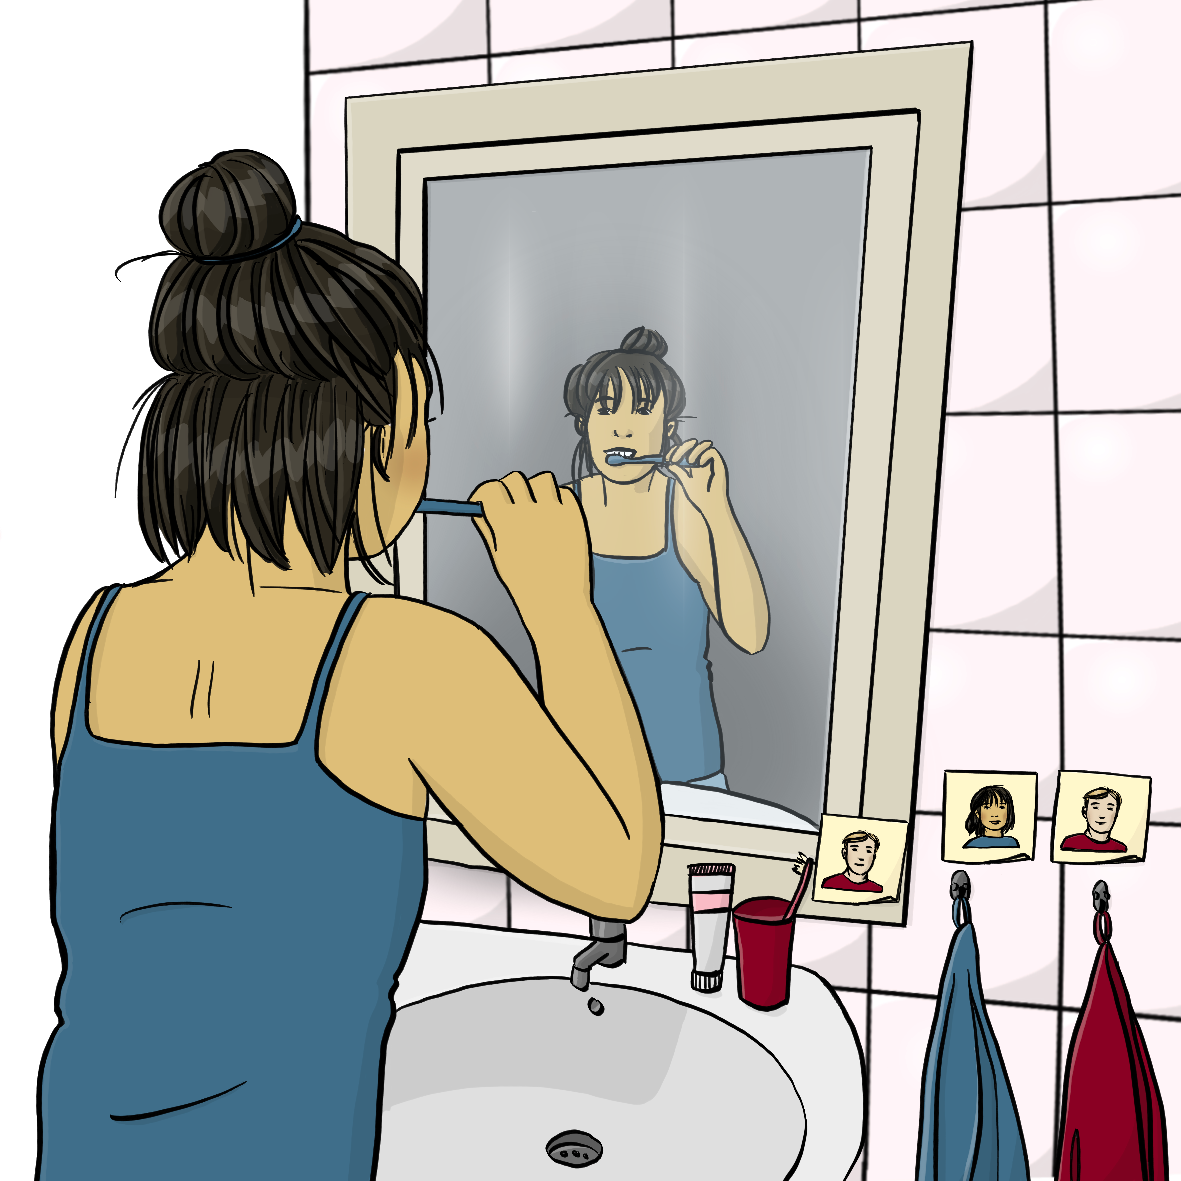 Eine Frau steht im Badezimmer vor dem Spiegel. Sie putzt sich die Zähne. Neben dem Spiegel hängen zwei Handtücher. Die Handtücher sind mit Schildern gekennzeichnet: Das eine Handtuch gehört der Frau, das andere Handtuch gehört ihrem Mann. 